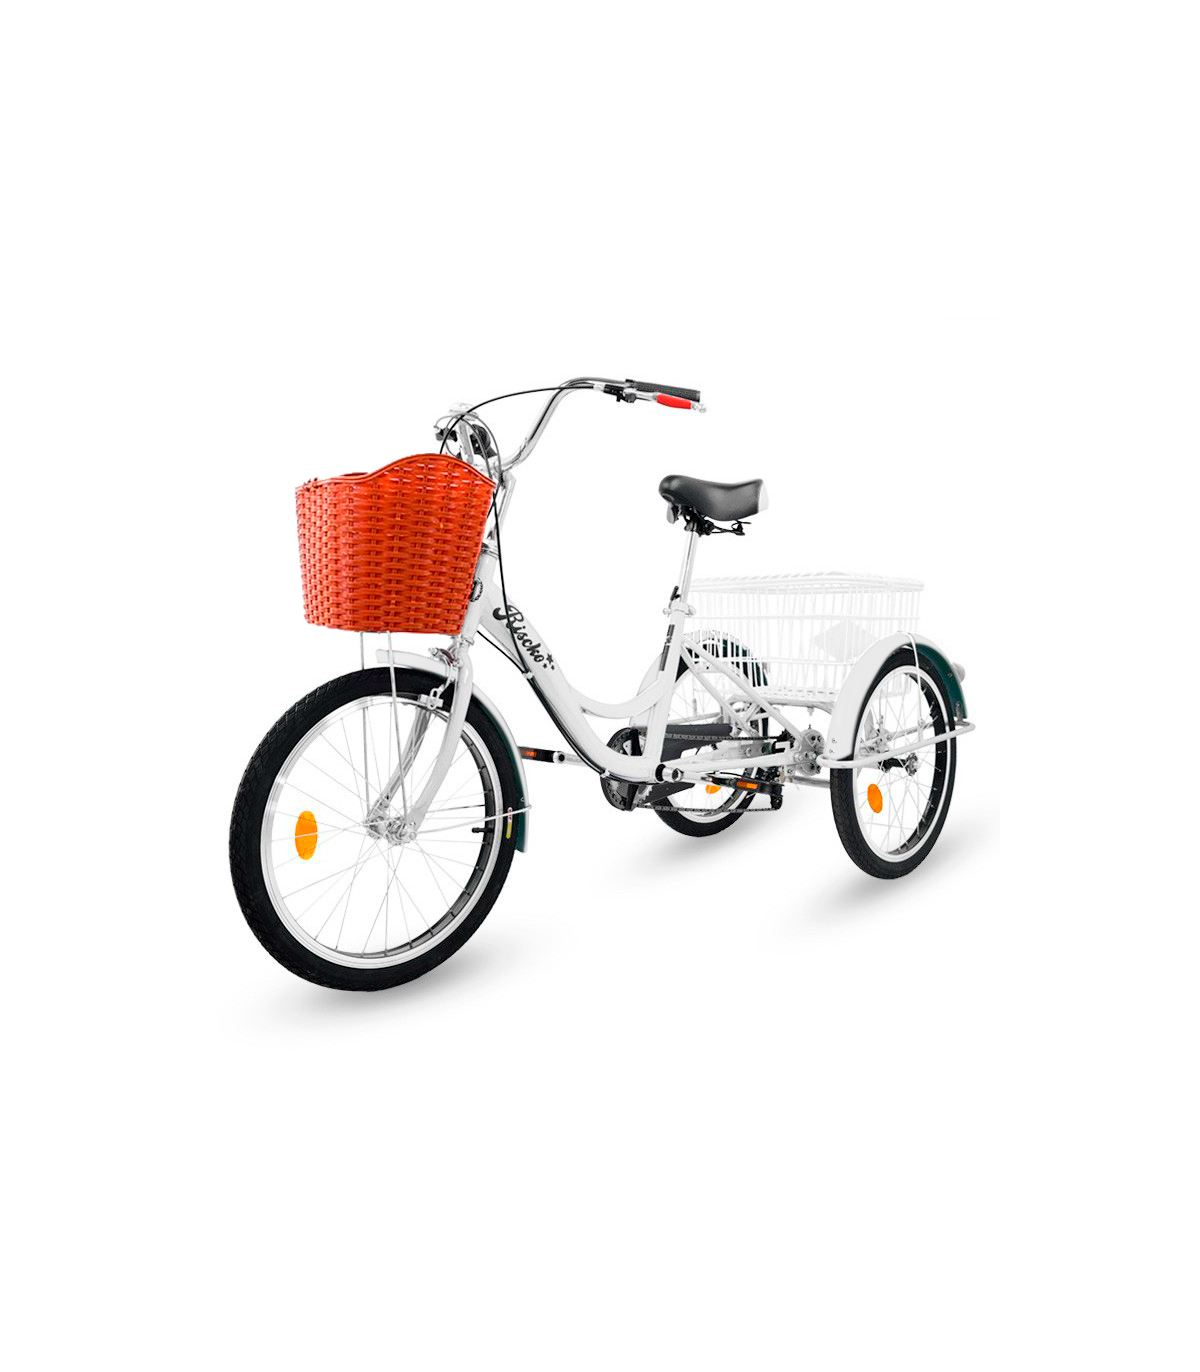 MODELOS DE TRICICLOS  Triciclo, Bicicleta de 3 ruedas, Tuercas de